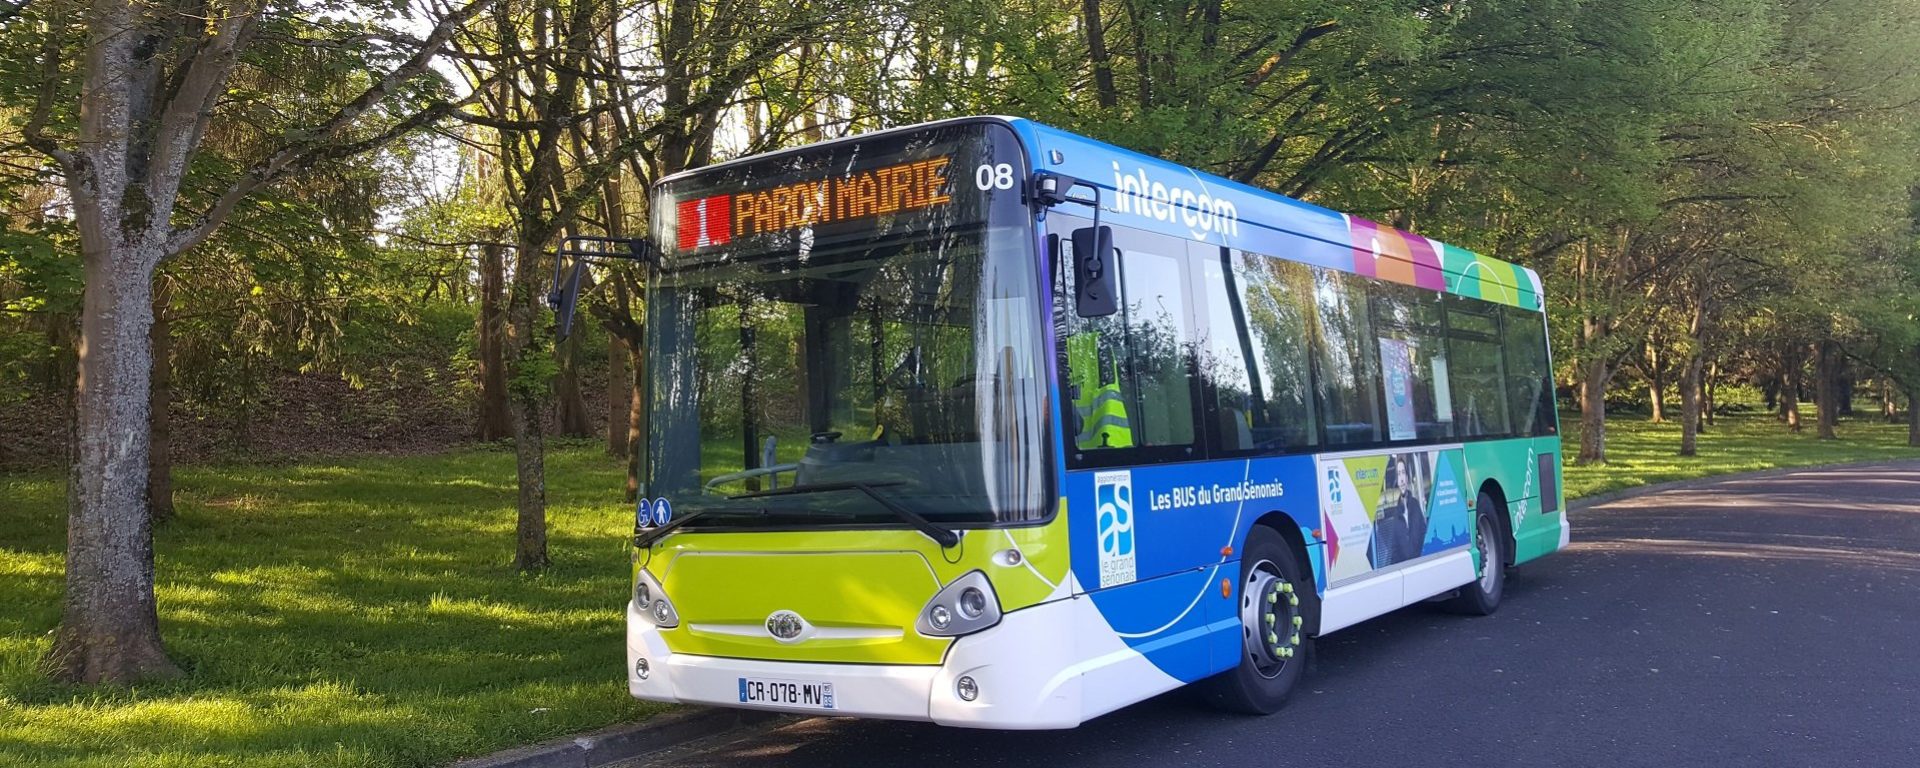 Bus_transport urbain_Intercom_Sens_Transdev_Bourgogne-Franche-Comté